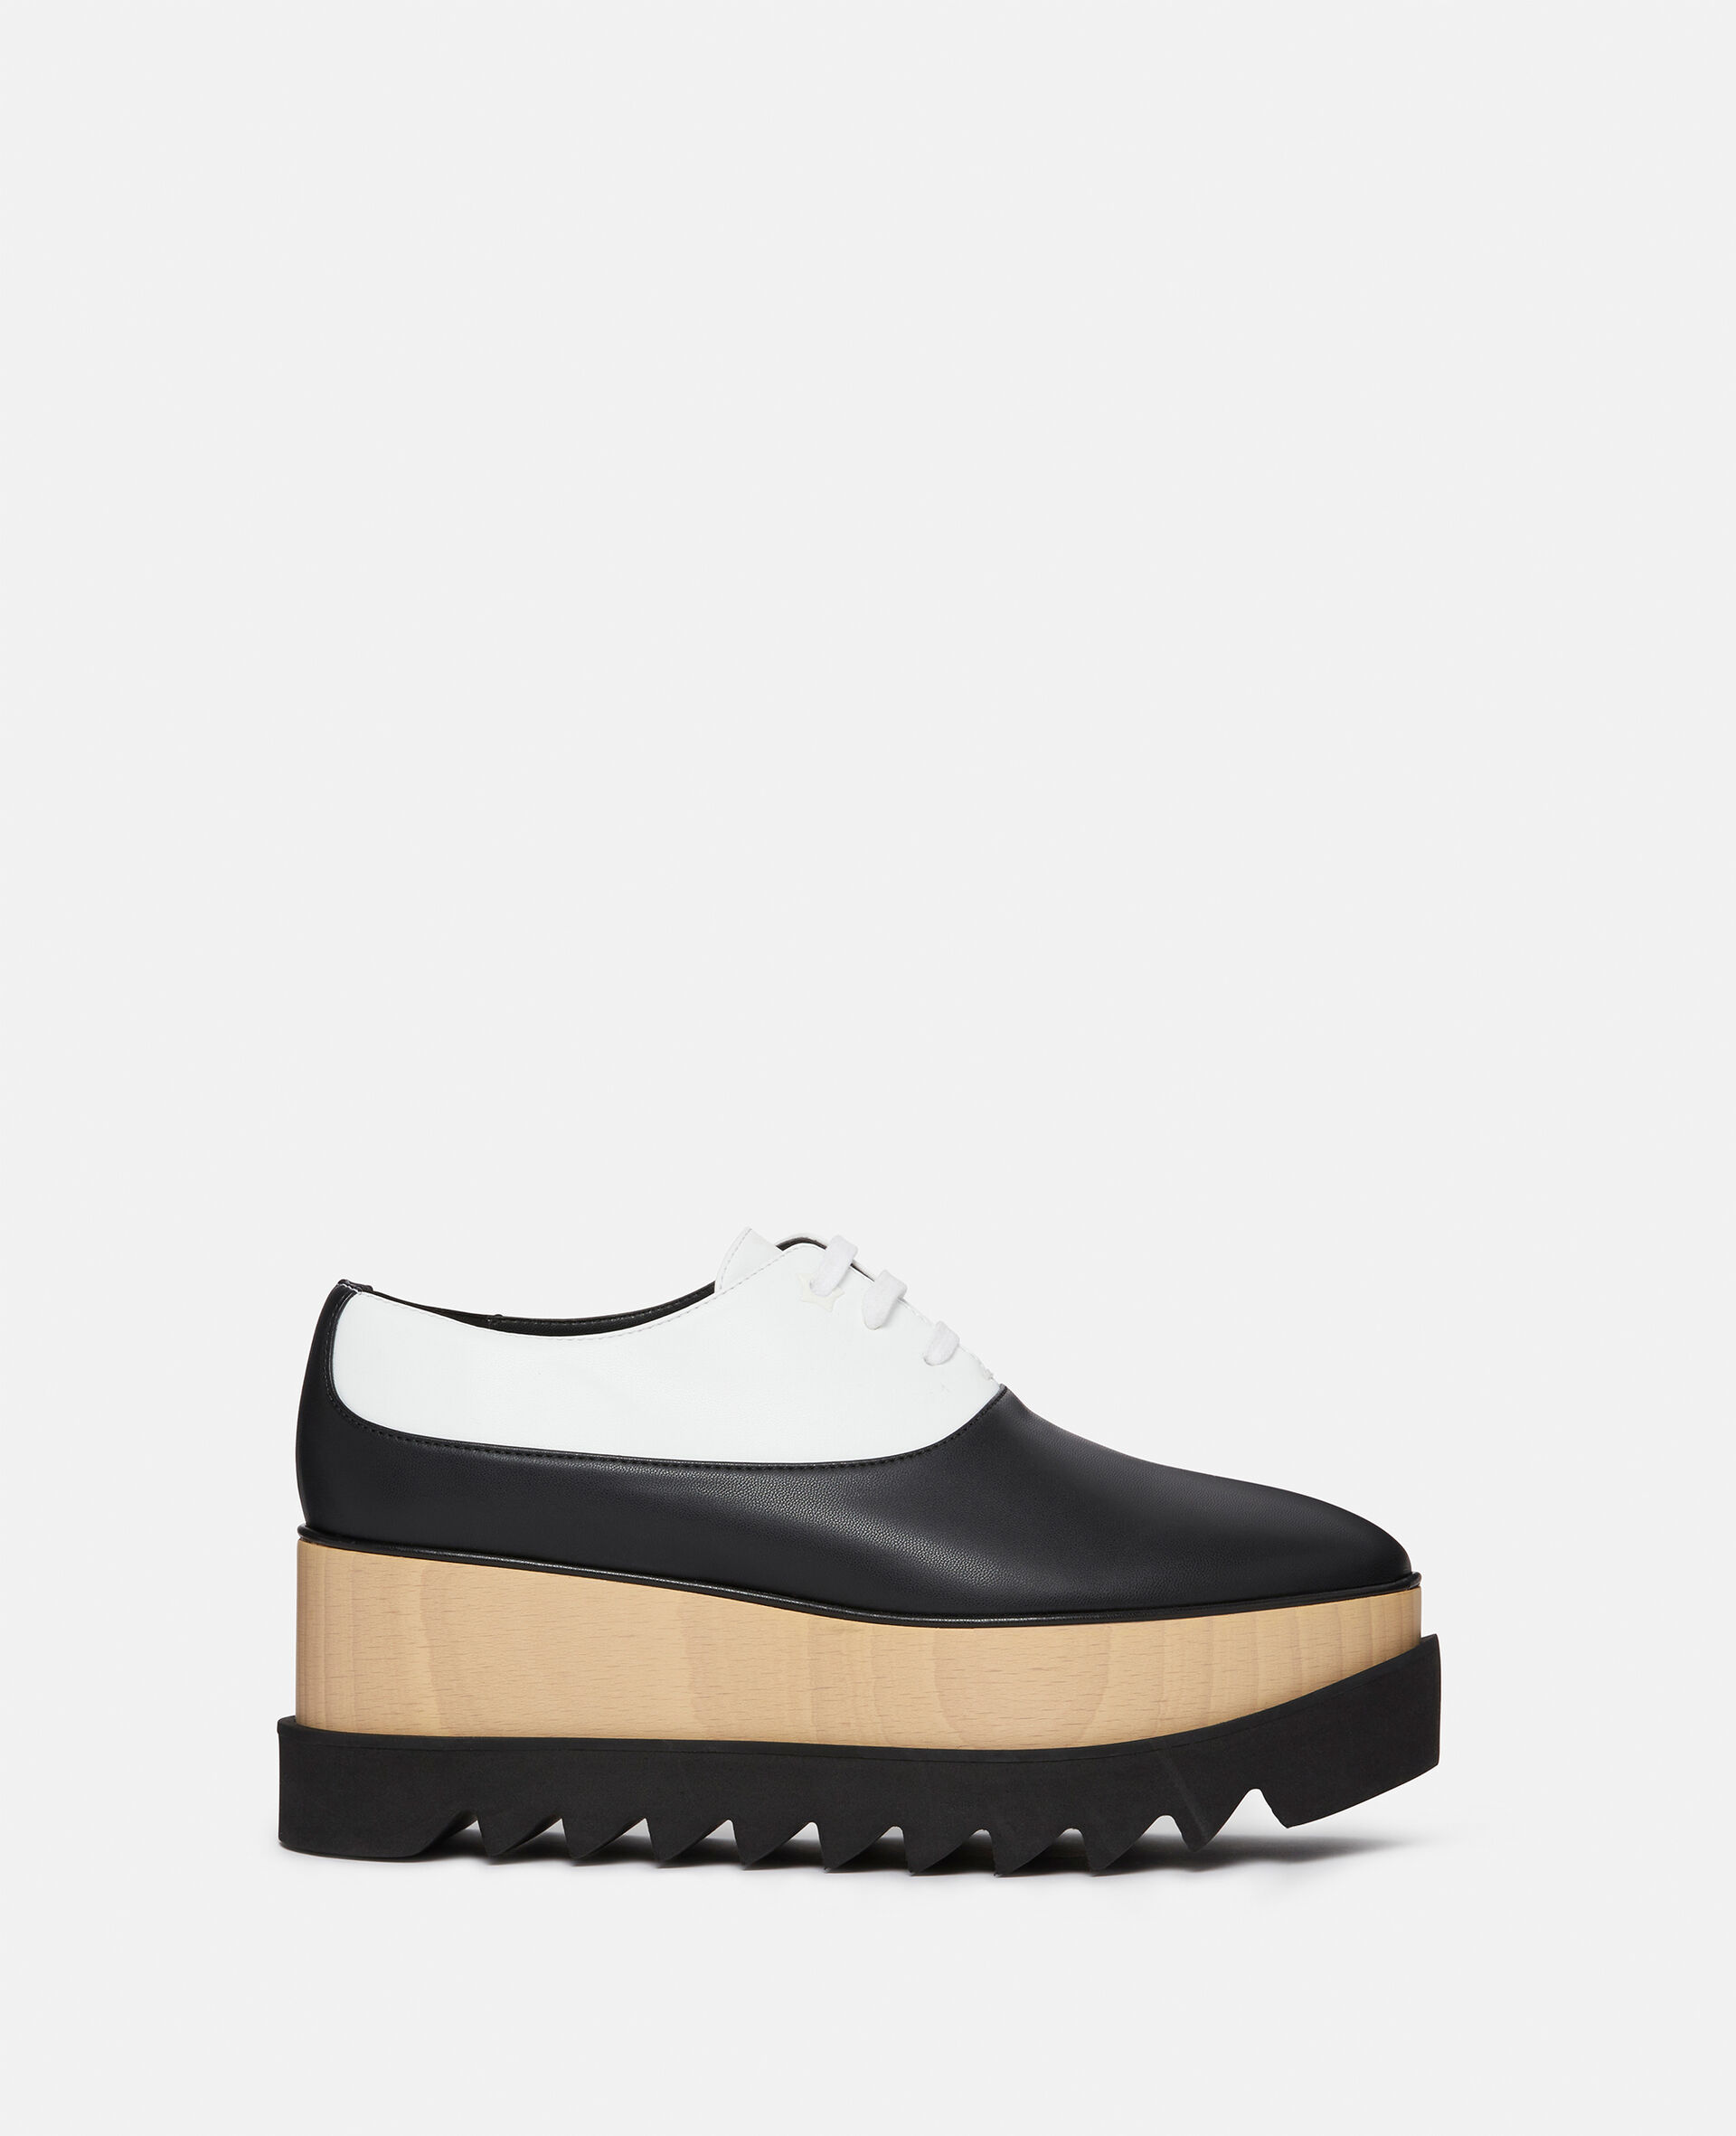 Elyse Monochrome Platform Shoes-Black-large image number 0